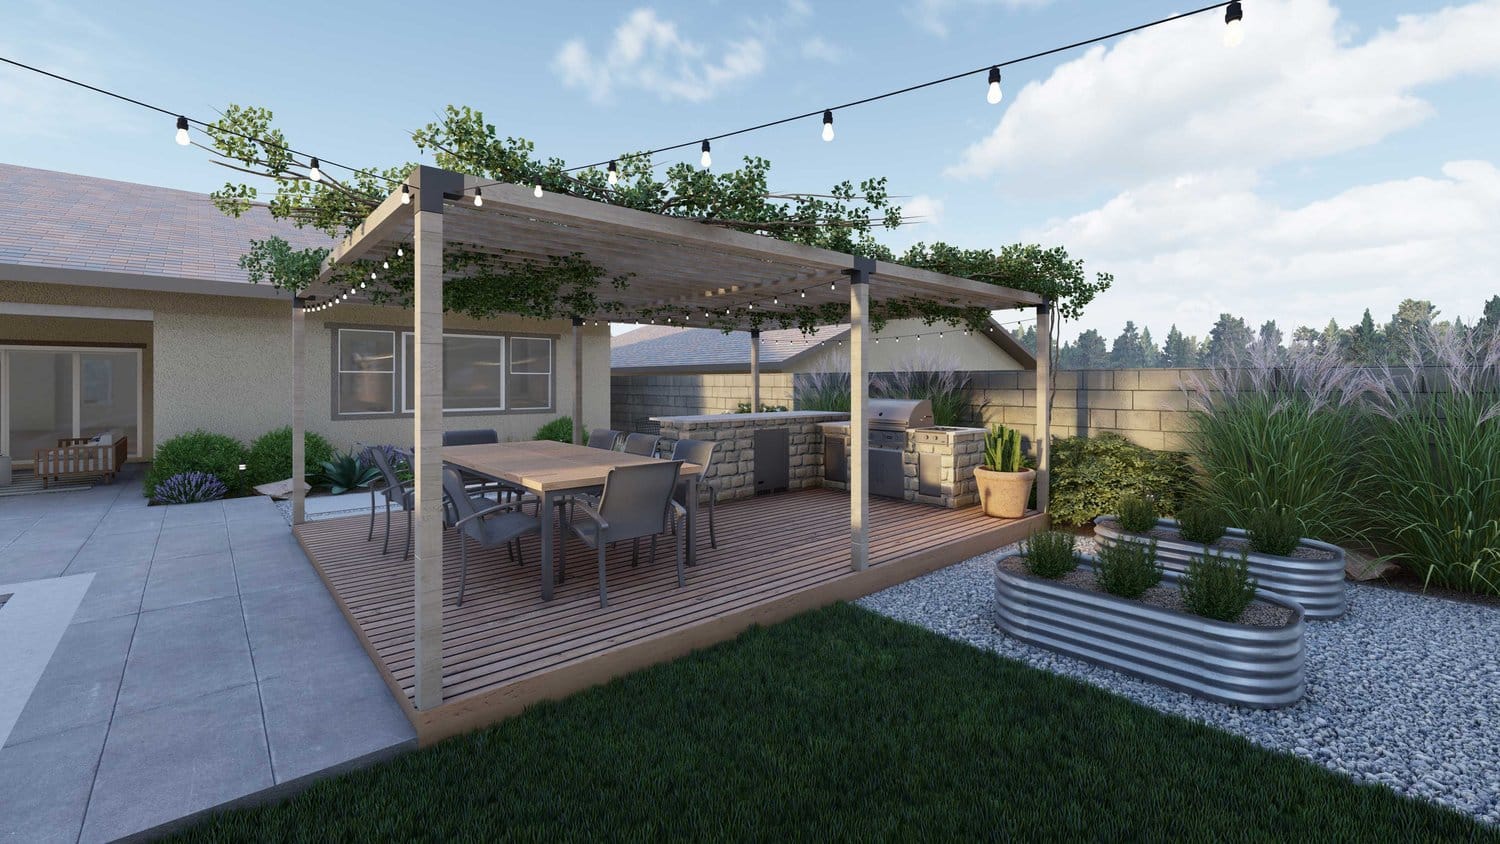 千橡市与绿廊后院甲板露台户外厨房和餐厅,除了提高花园床